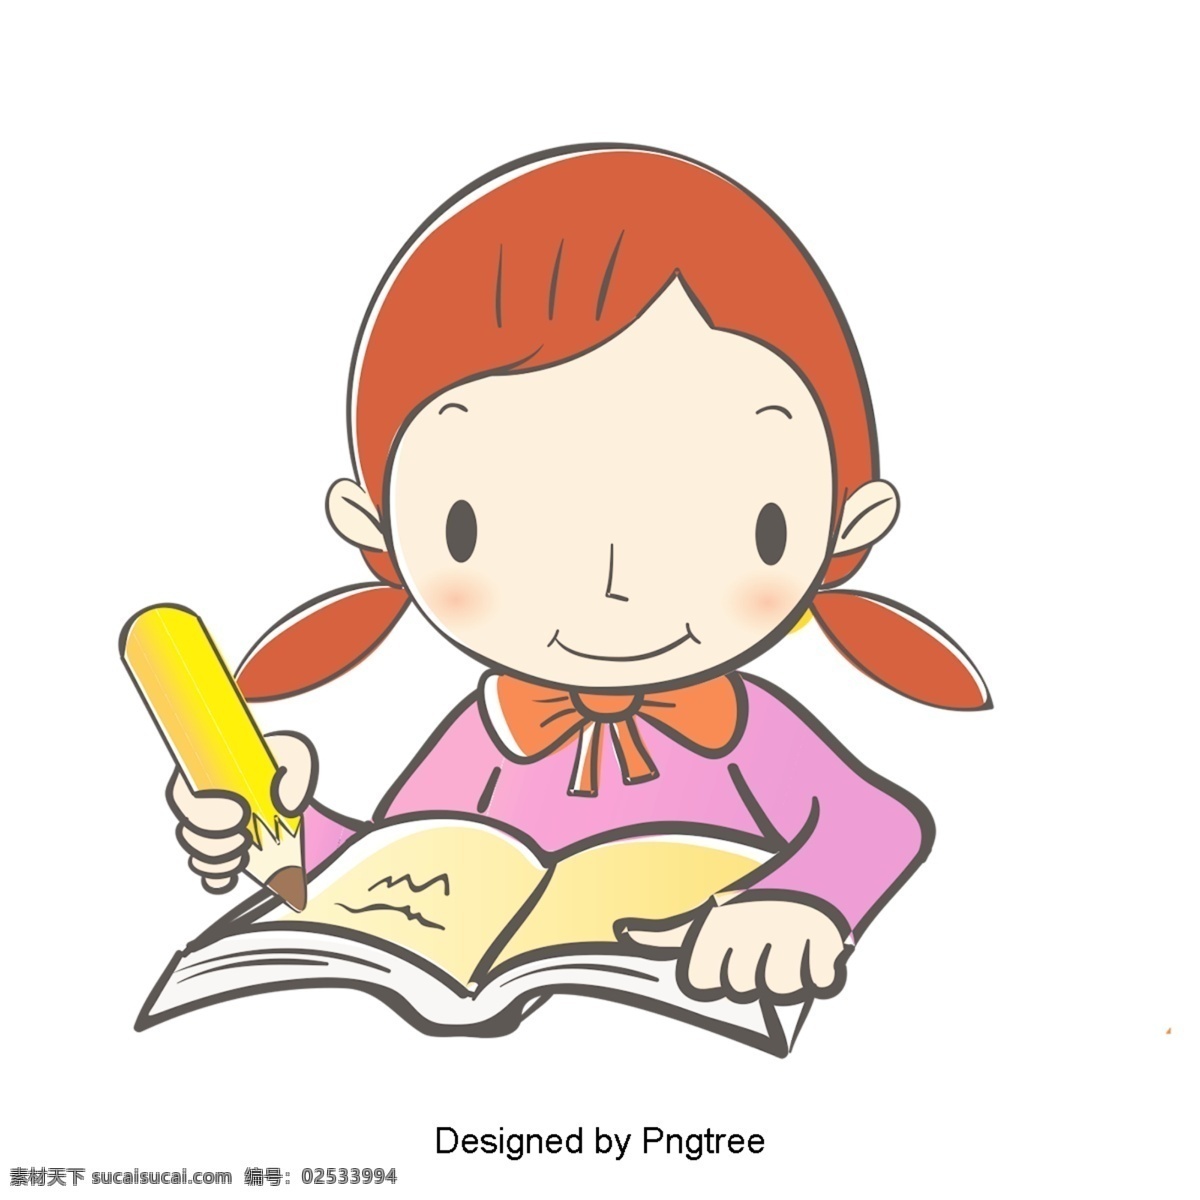 卡通 手绘 学生 学习 可爱 学校 铅笔 书 颜色 简单 课堂